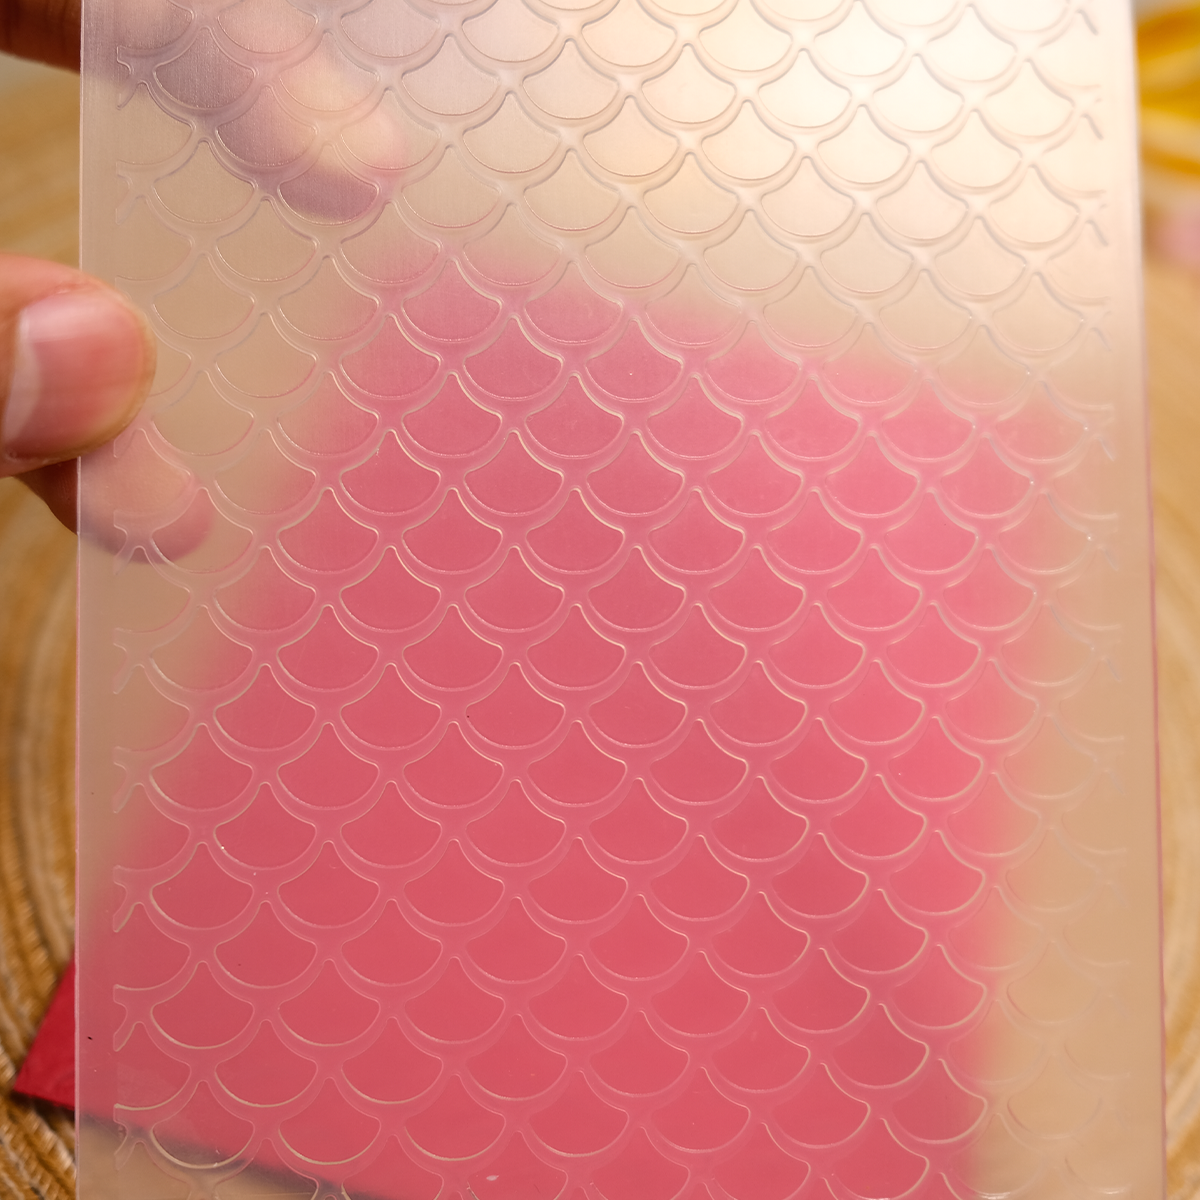 Fan-shaped texture Plastic Embossing Folder